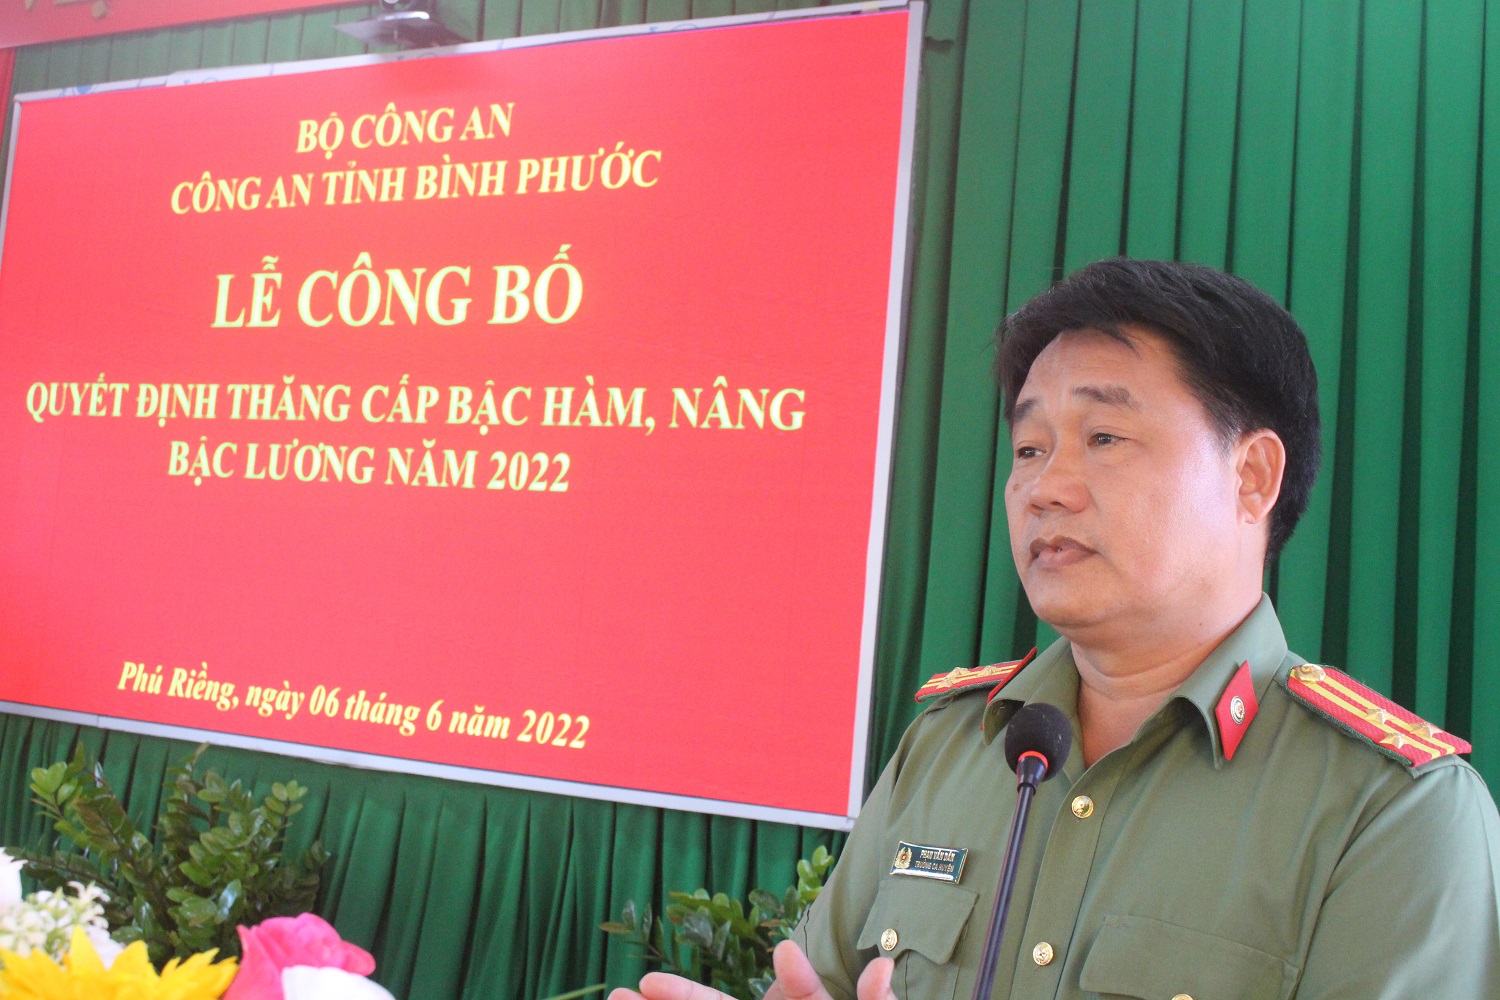 Năm 2022 Công an huyện Phú Riềng có 39 cán bộ chiến sỹ được nâng lương, thăm cấp bậc hàm.